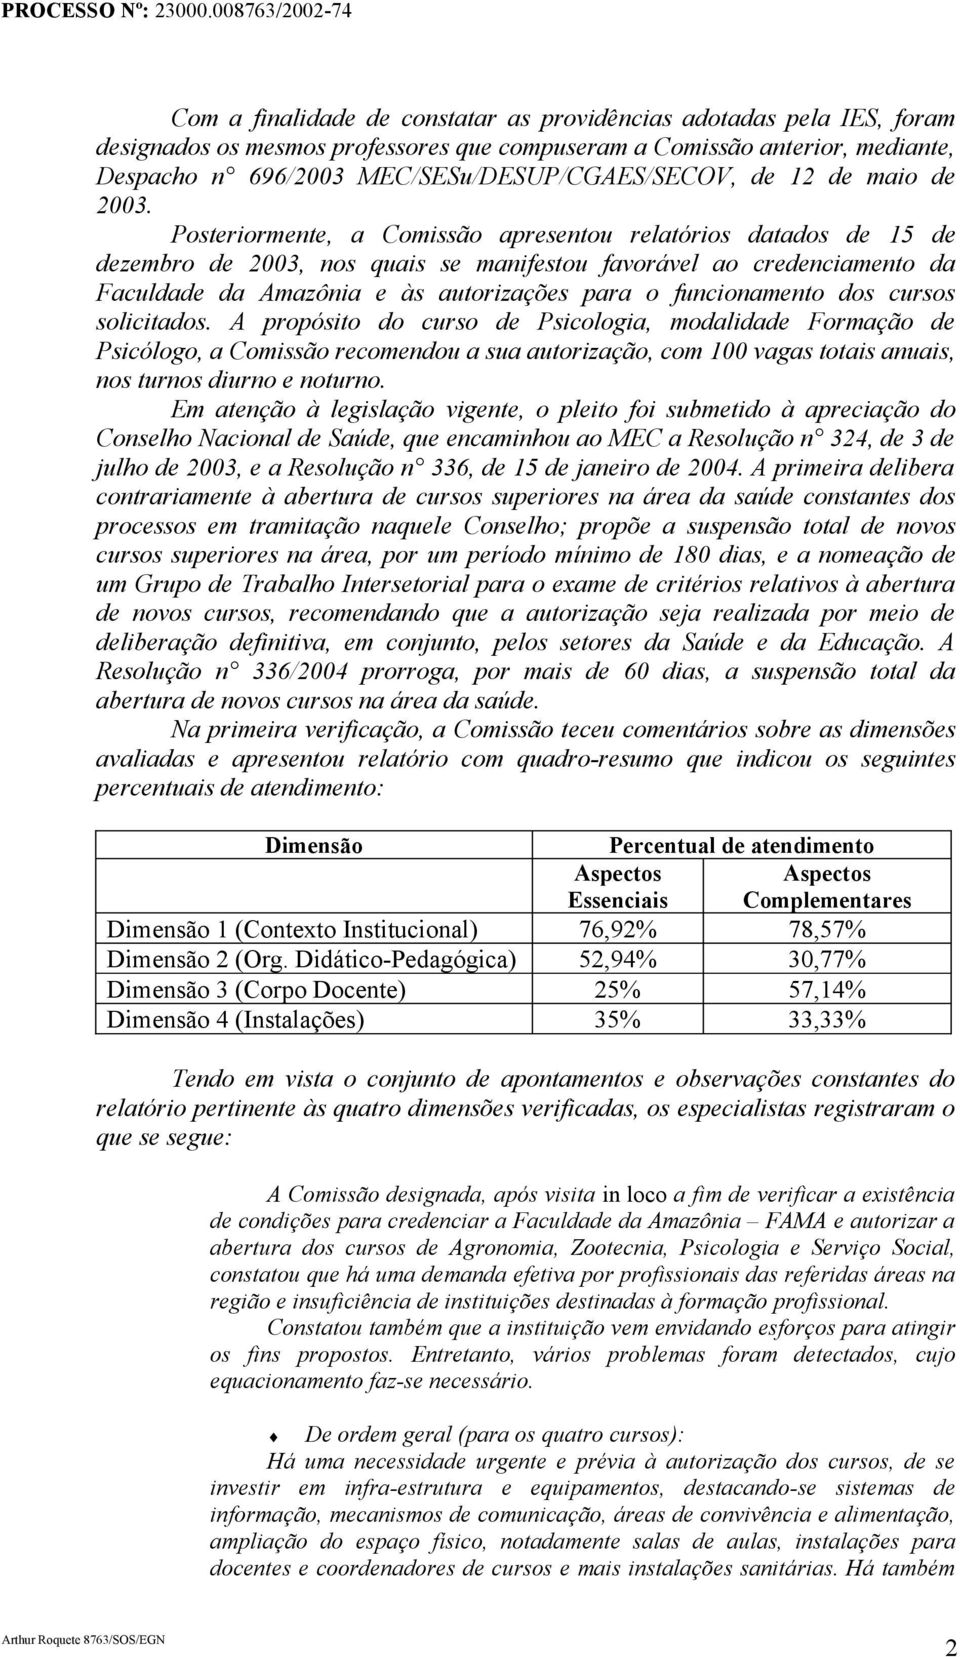 Posteriormente, a Comissão apresentou relatórios datados de 15 de dezembro de 2003, nos quais se manifestou favorável ao credenciamento da Faculdade da Amazônia e às autorizações para o funcionamento